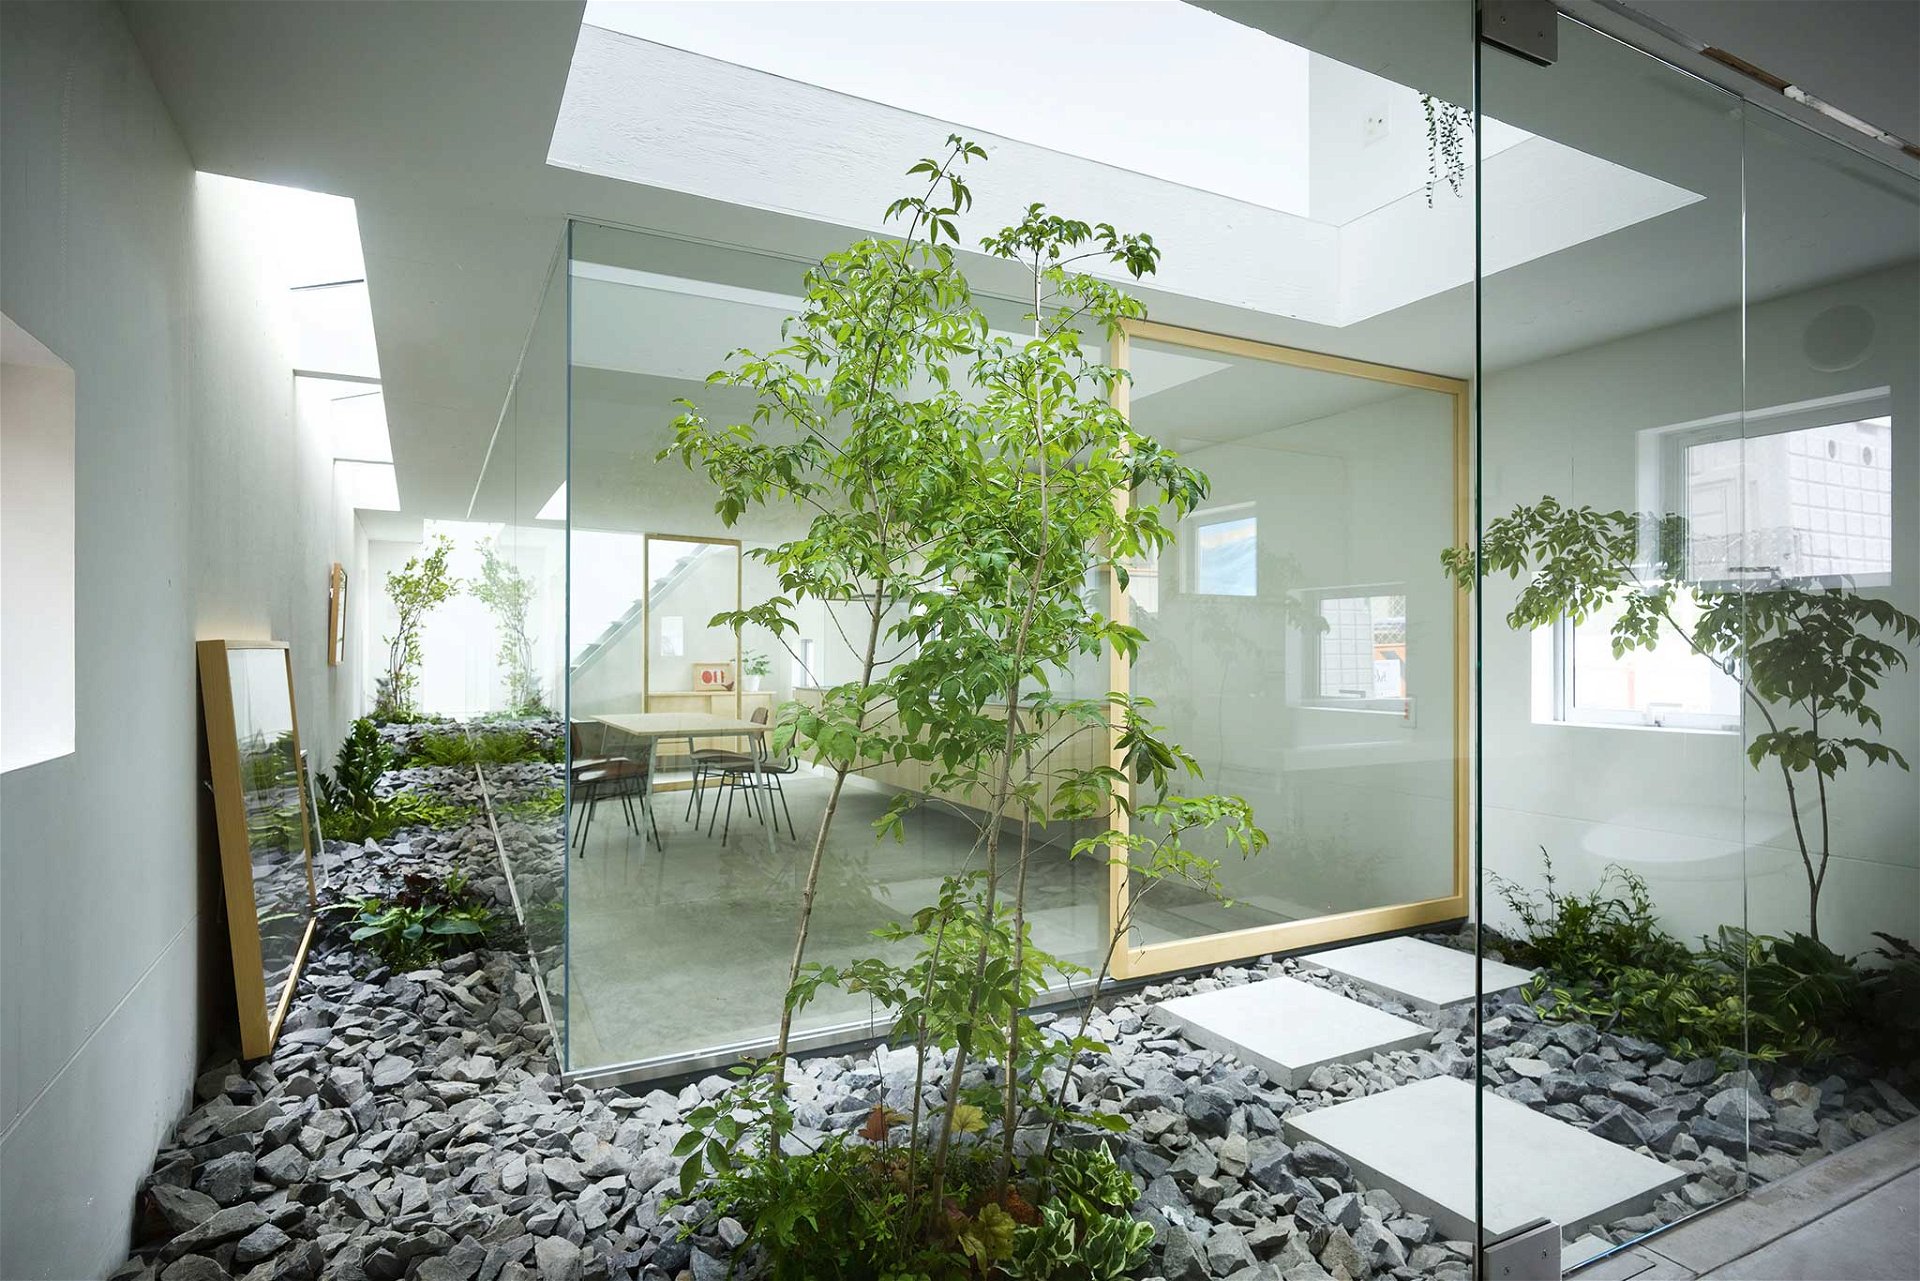 Das Moriyama-Haus in Nagoya, Japan, sieht aus wie ein raumgewordenes Gedicht aus Luft, Glas und Lavastein. Auf einer Grundstücksfläche von nur 82 Quadrat-metern schuf das Suppose Design Office eine dreidimensionale Collage aus gläsernen Zimmern mit offenen Zwischen-räumen und ungewöhnlich platzierten Pflanzen und Gemälden. Sinnlicher kann Wohnen nicht sein. suppose.jp